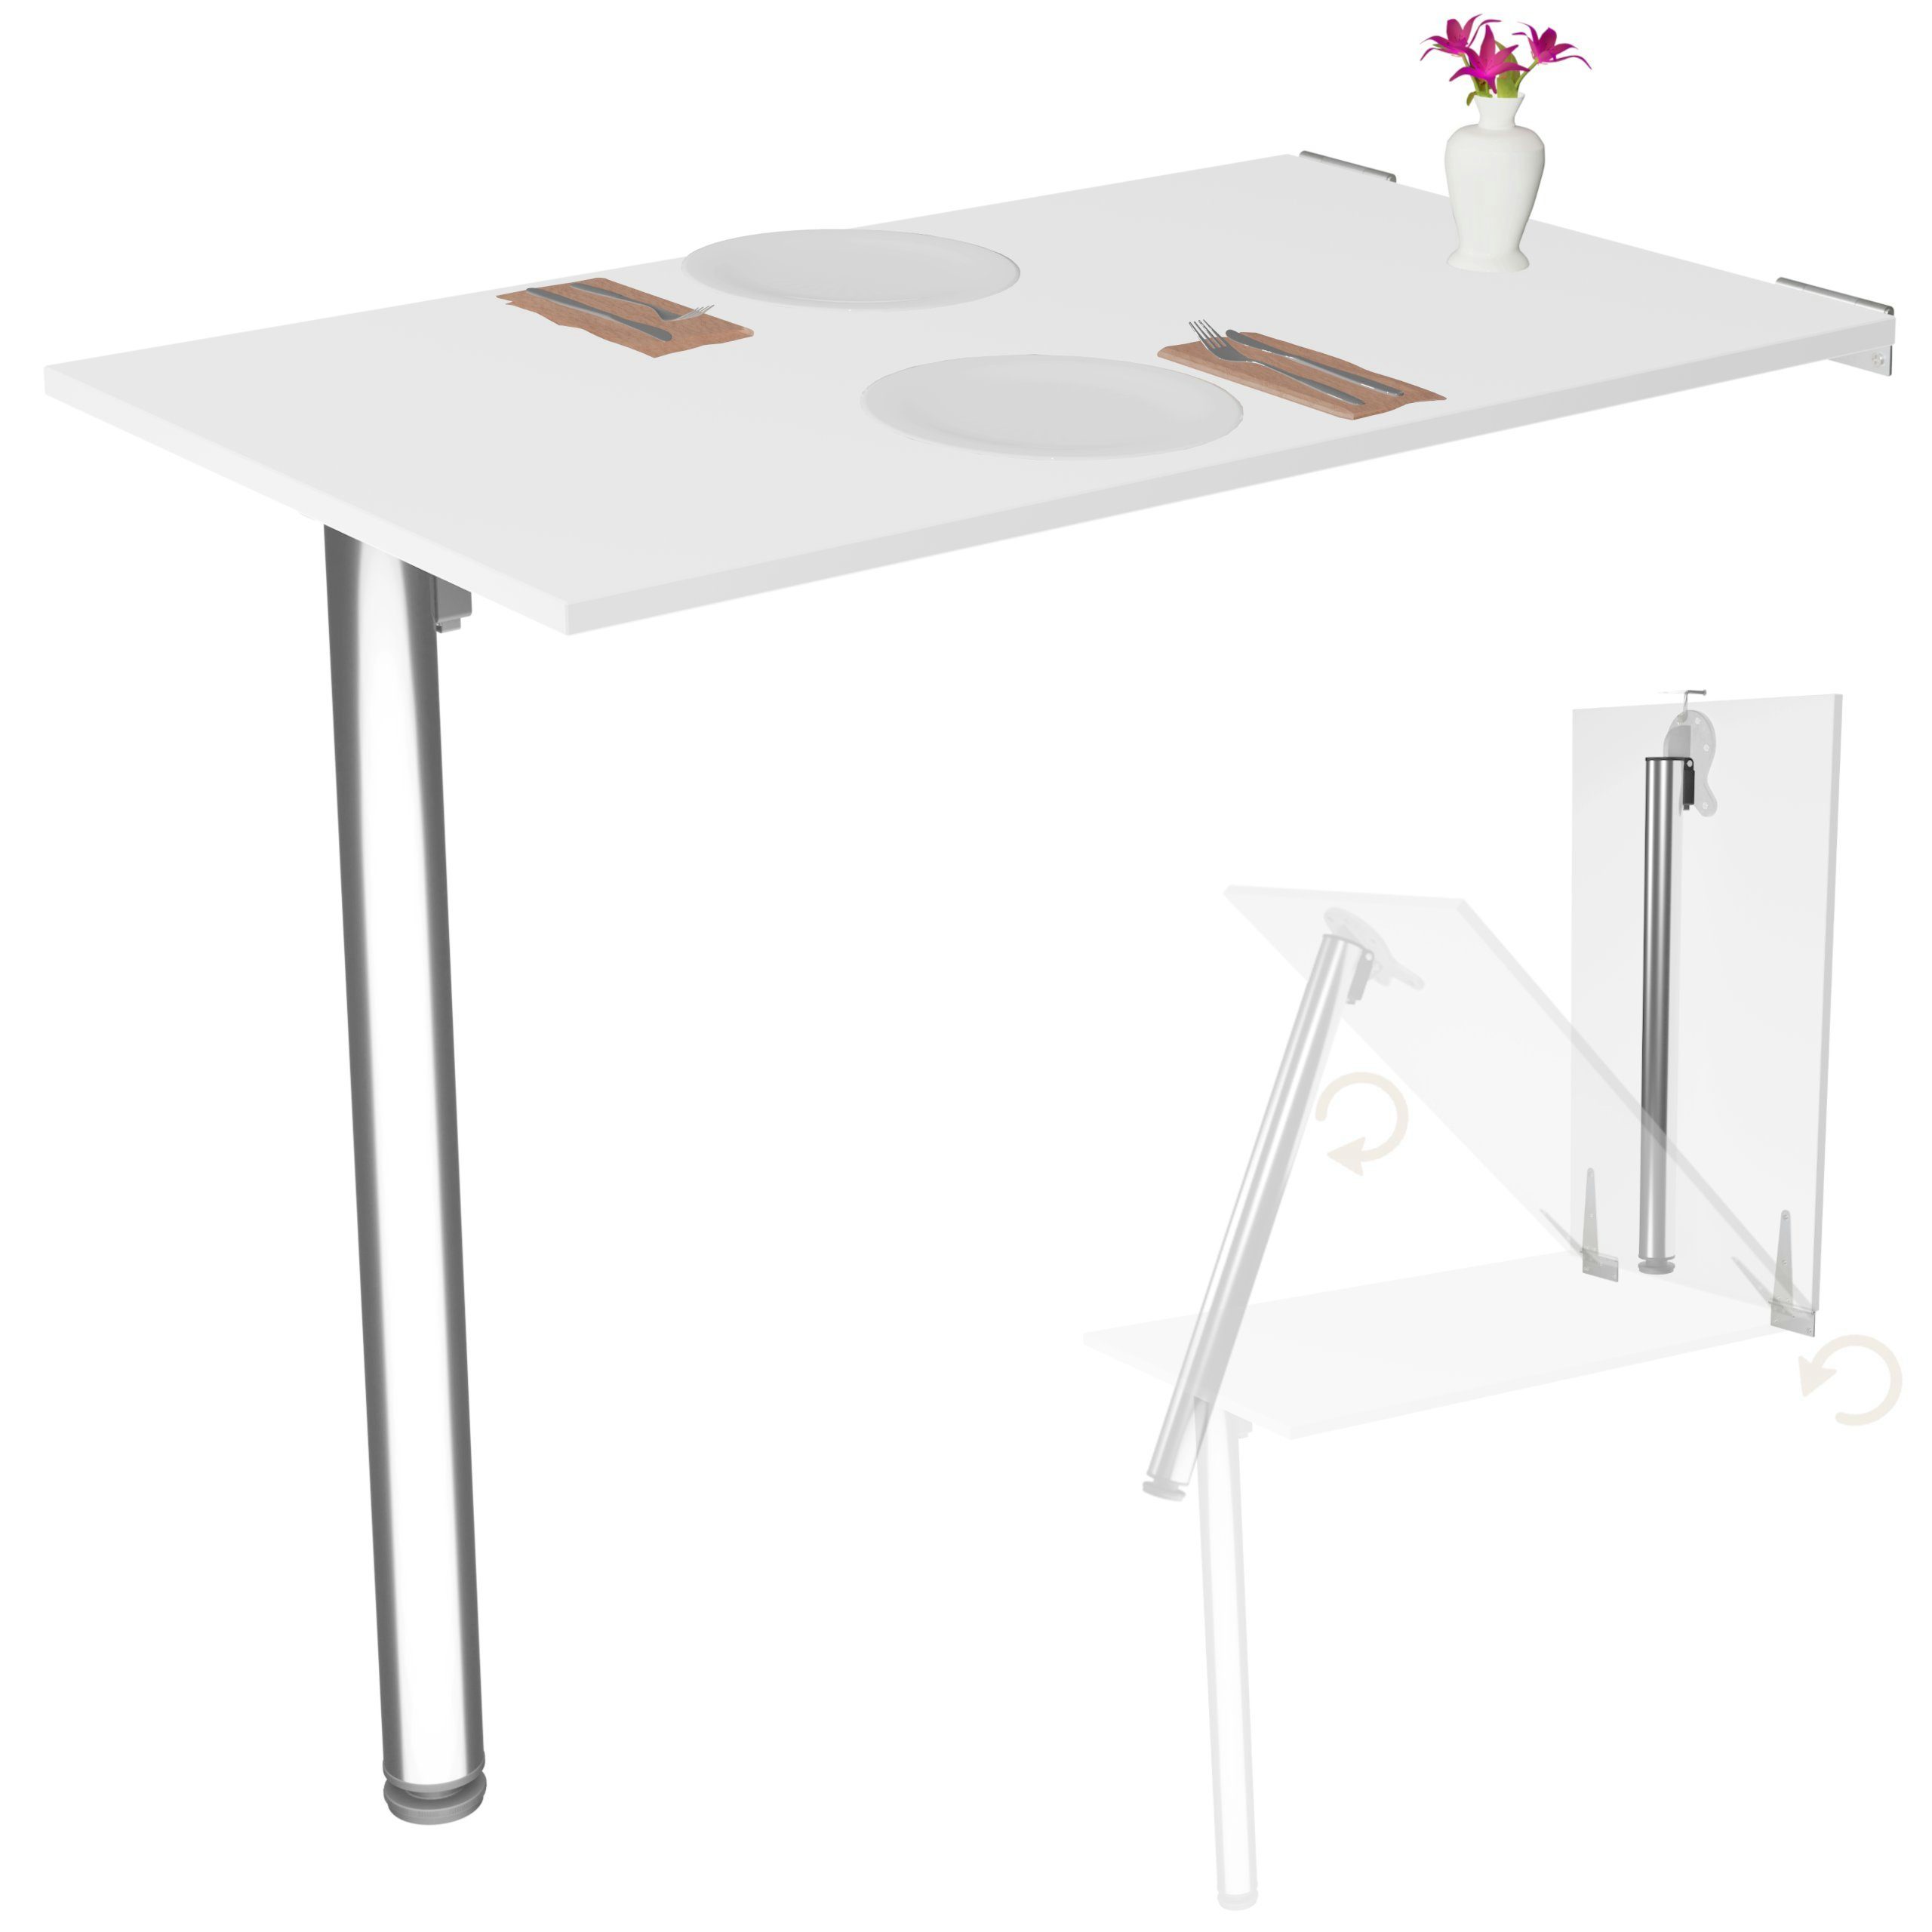 KDR Produktgestaltung Klapptisch Wandklapptisch Esstisch Küchentisch  Schreibtisch Wand Tisch Klappbar, Weiß